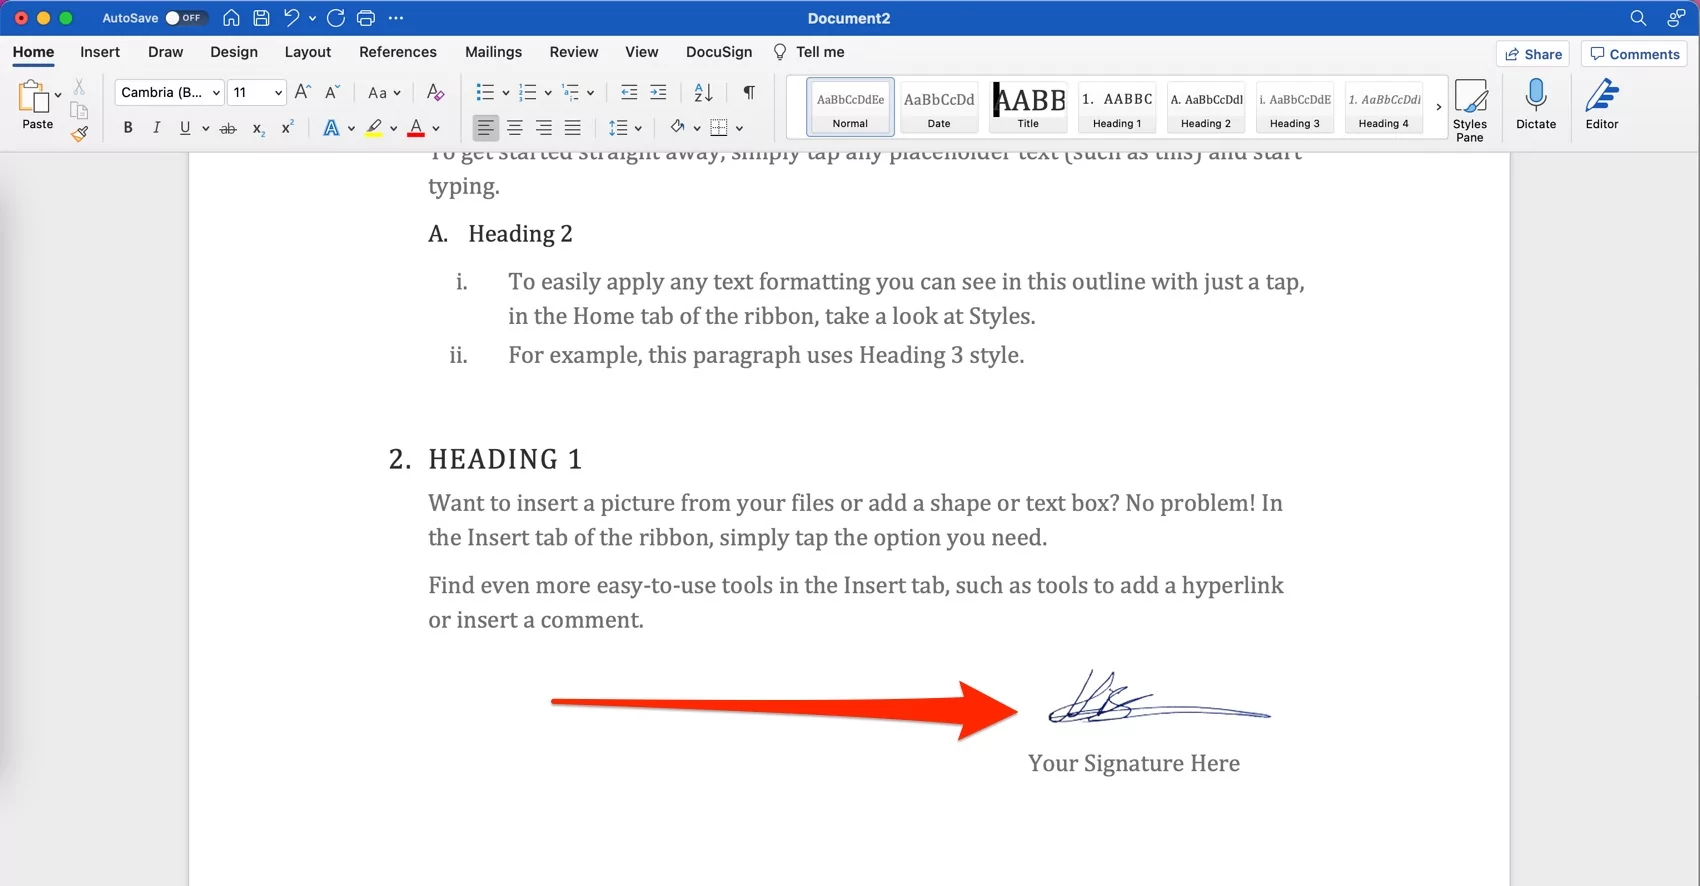 arrange-signature-space-on-word-file-on-mac